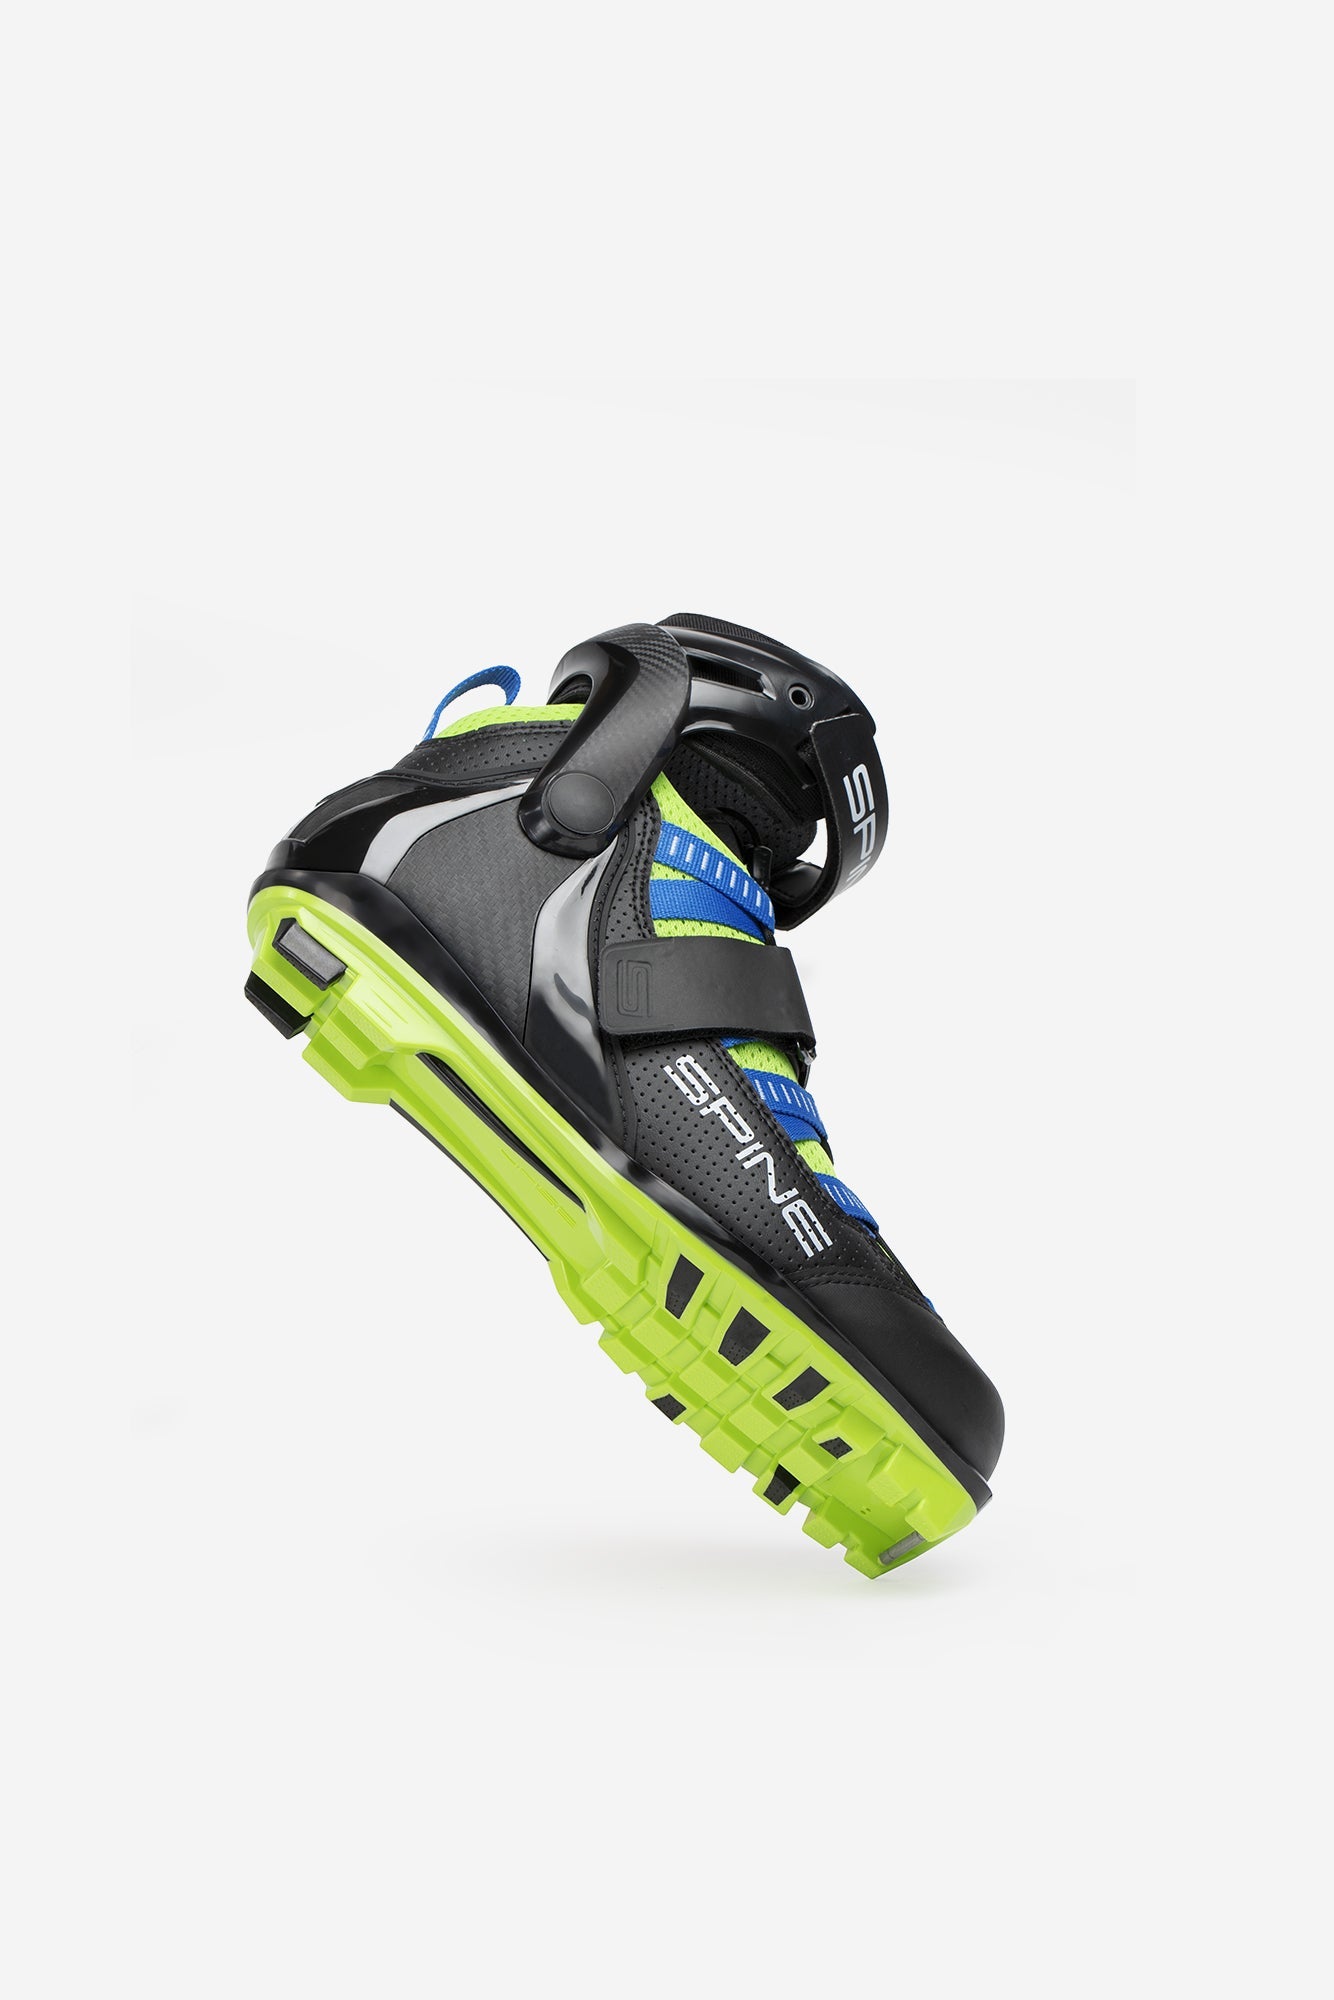 Concept Skiroll Skate Pro 18 (NNN) Roller Ski Boots Angle 1